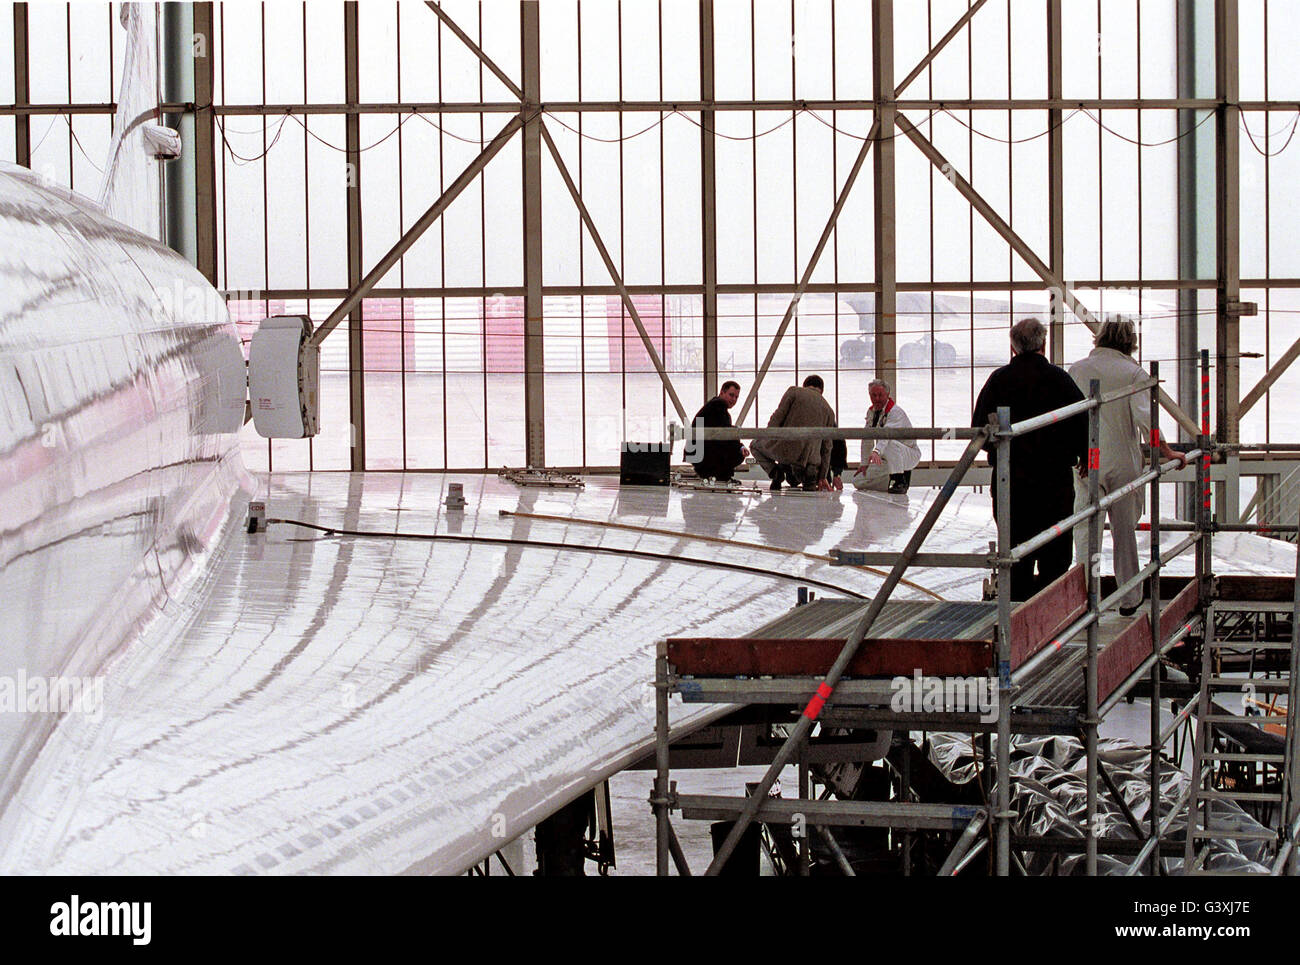 CONCORDE. Des ingénieurs sur l'aile d'un Concorde de British Airways dans un hangar à l'aéroport d'Heathrow, le 23 mars 2001. Ils ont été modifiant les réservoirs de carburant pour empêcher la pénétration de débris de la piste après le crash du Concorde Paris fatale Banque D'Images